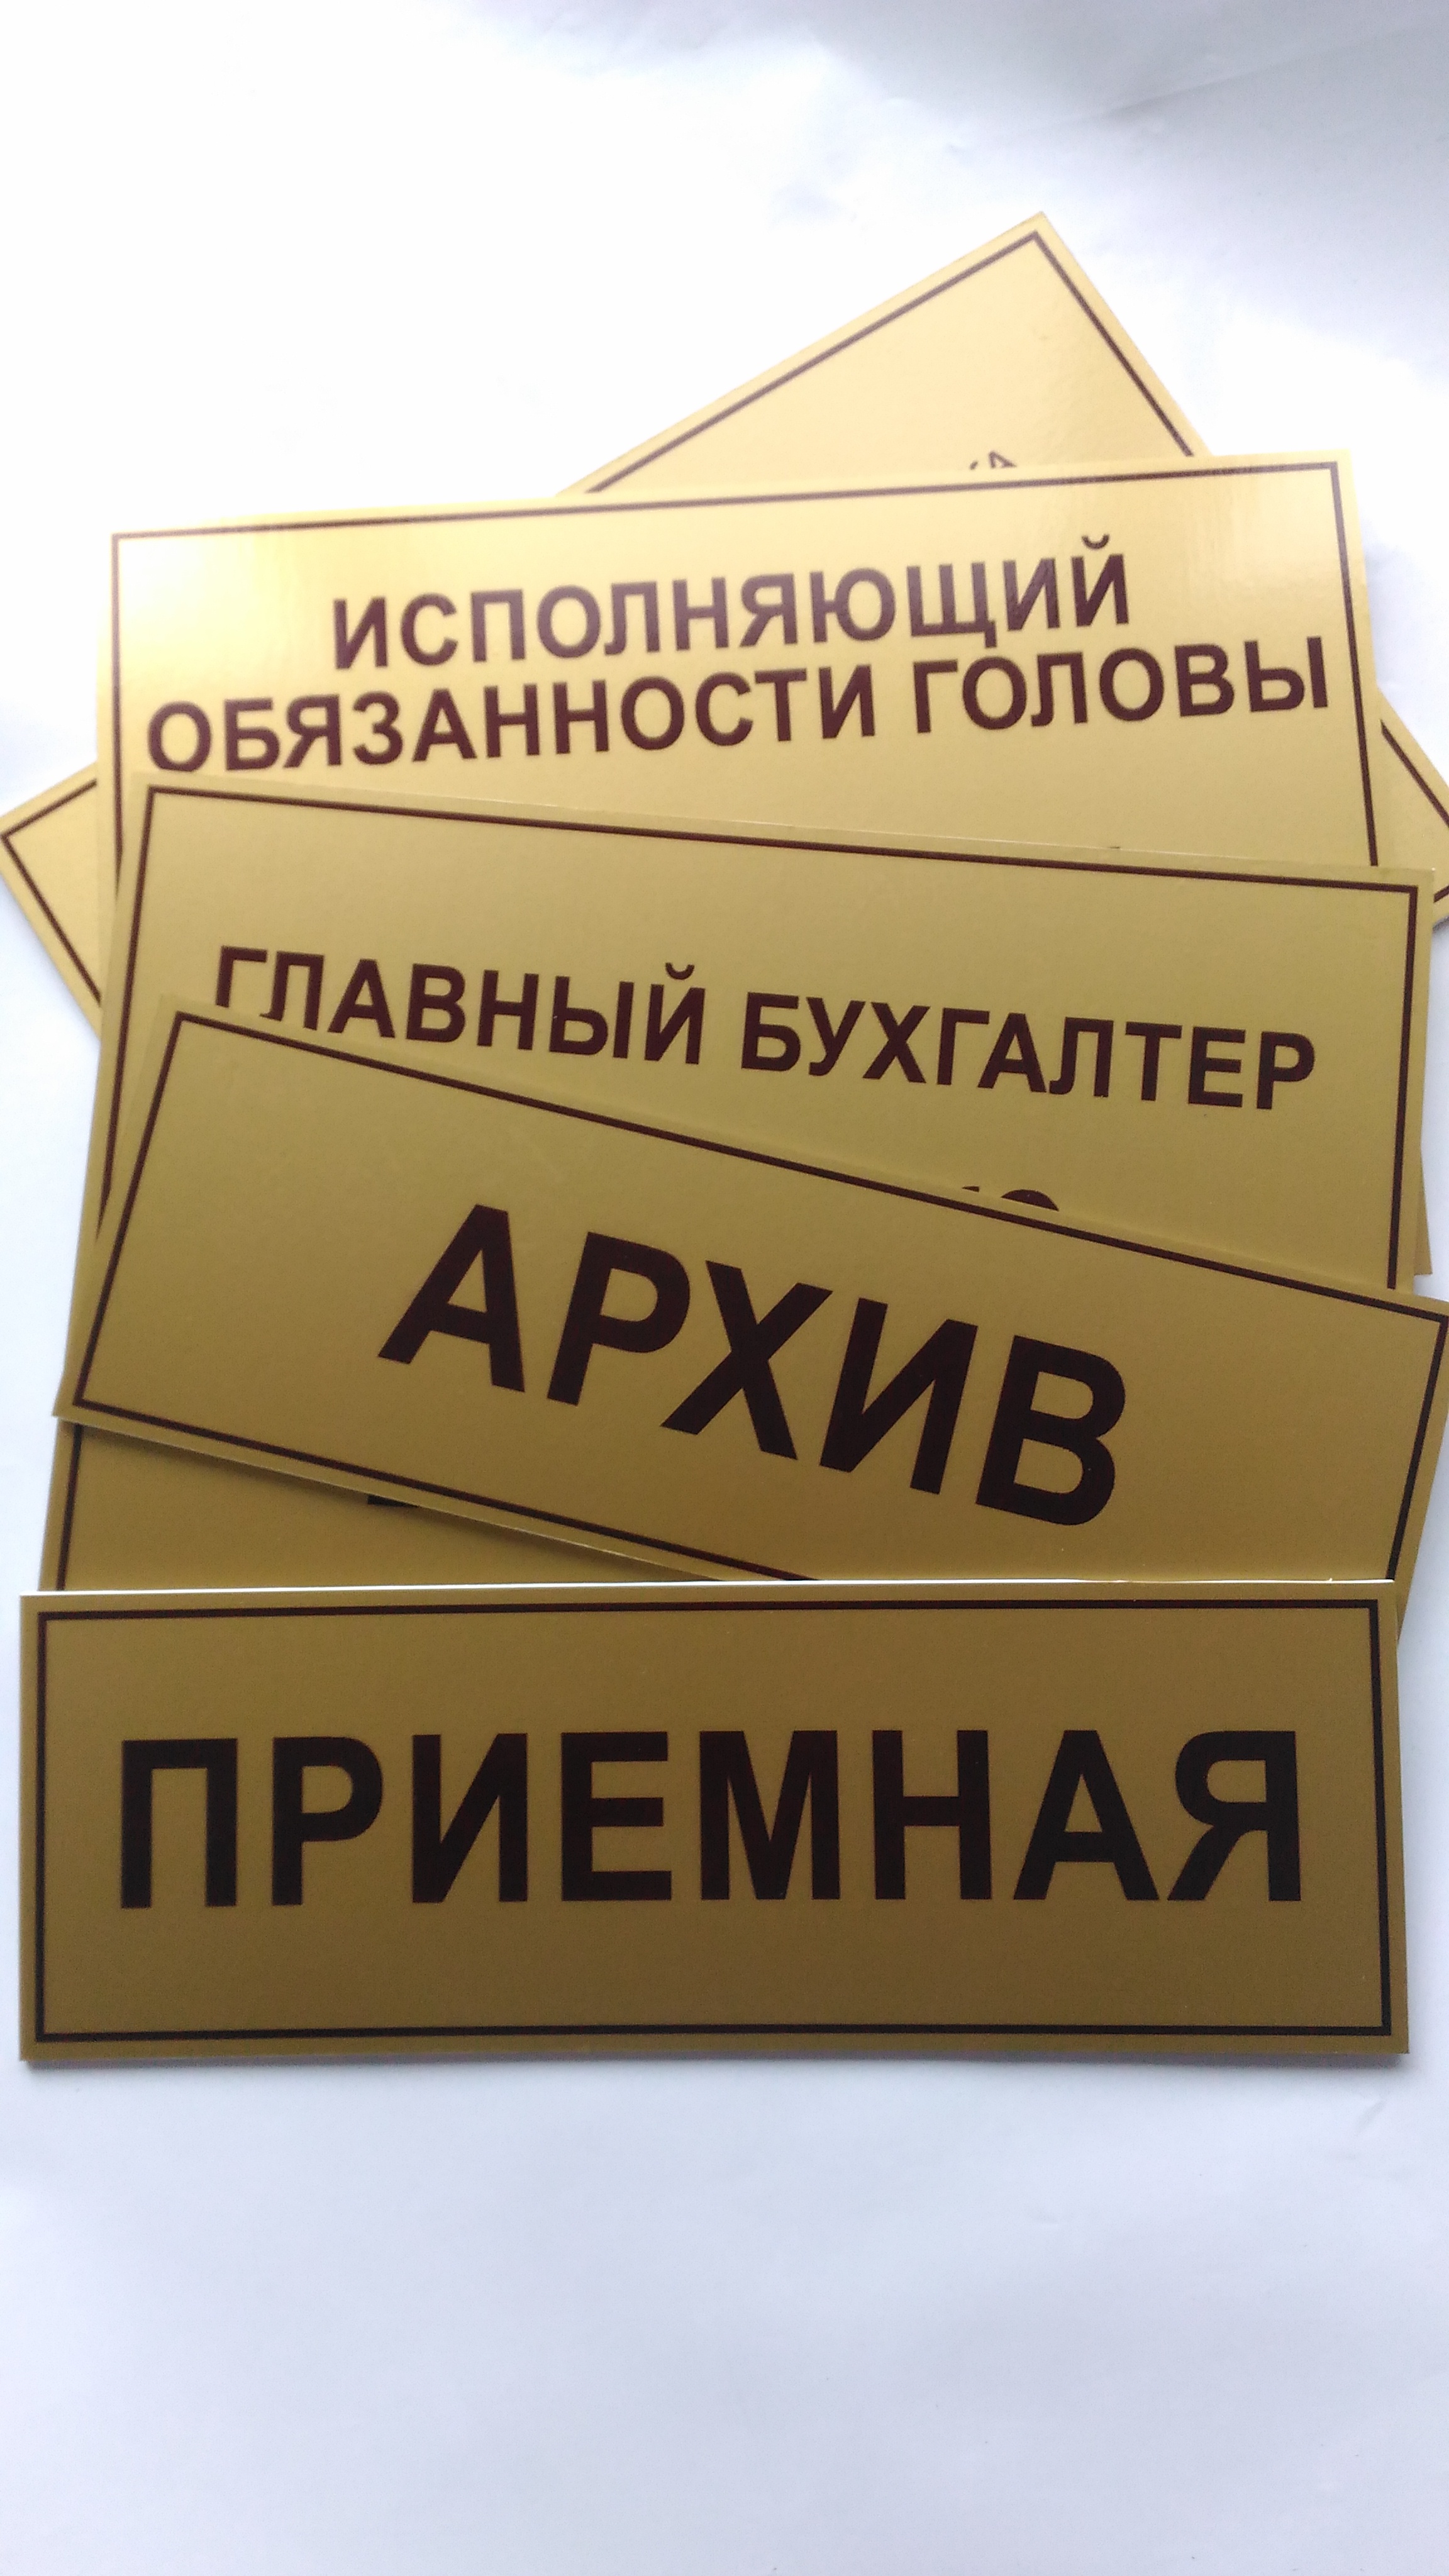 Вывески в типографии БиС, Луганск